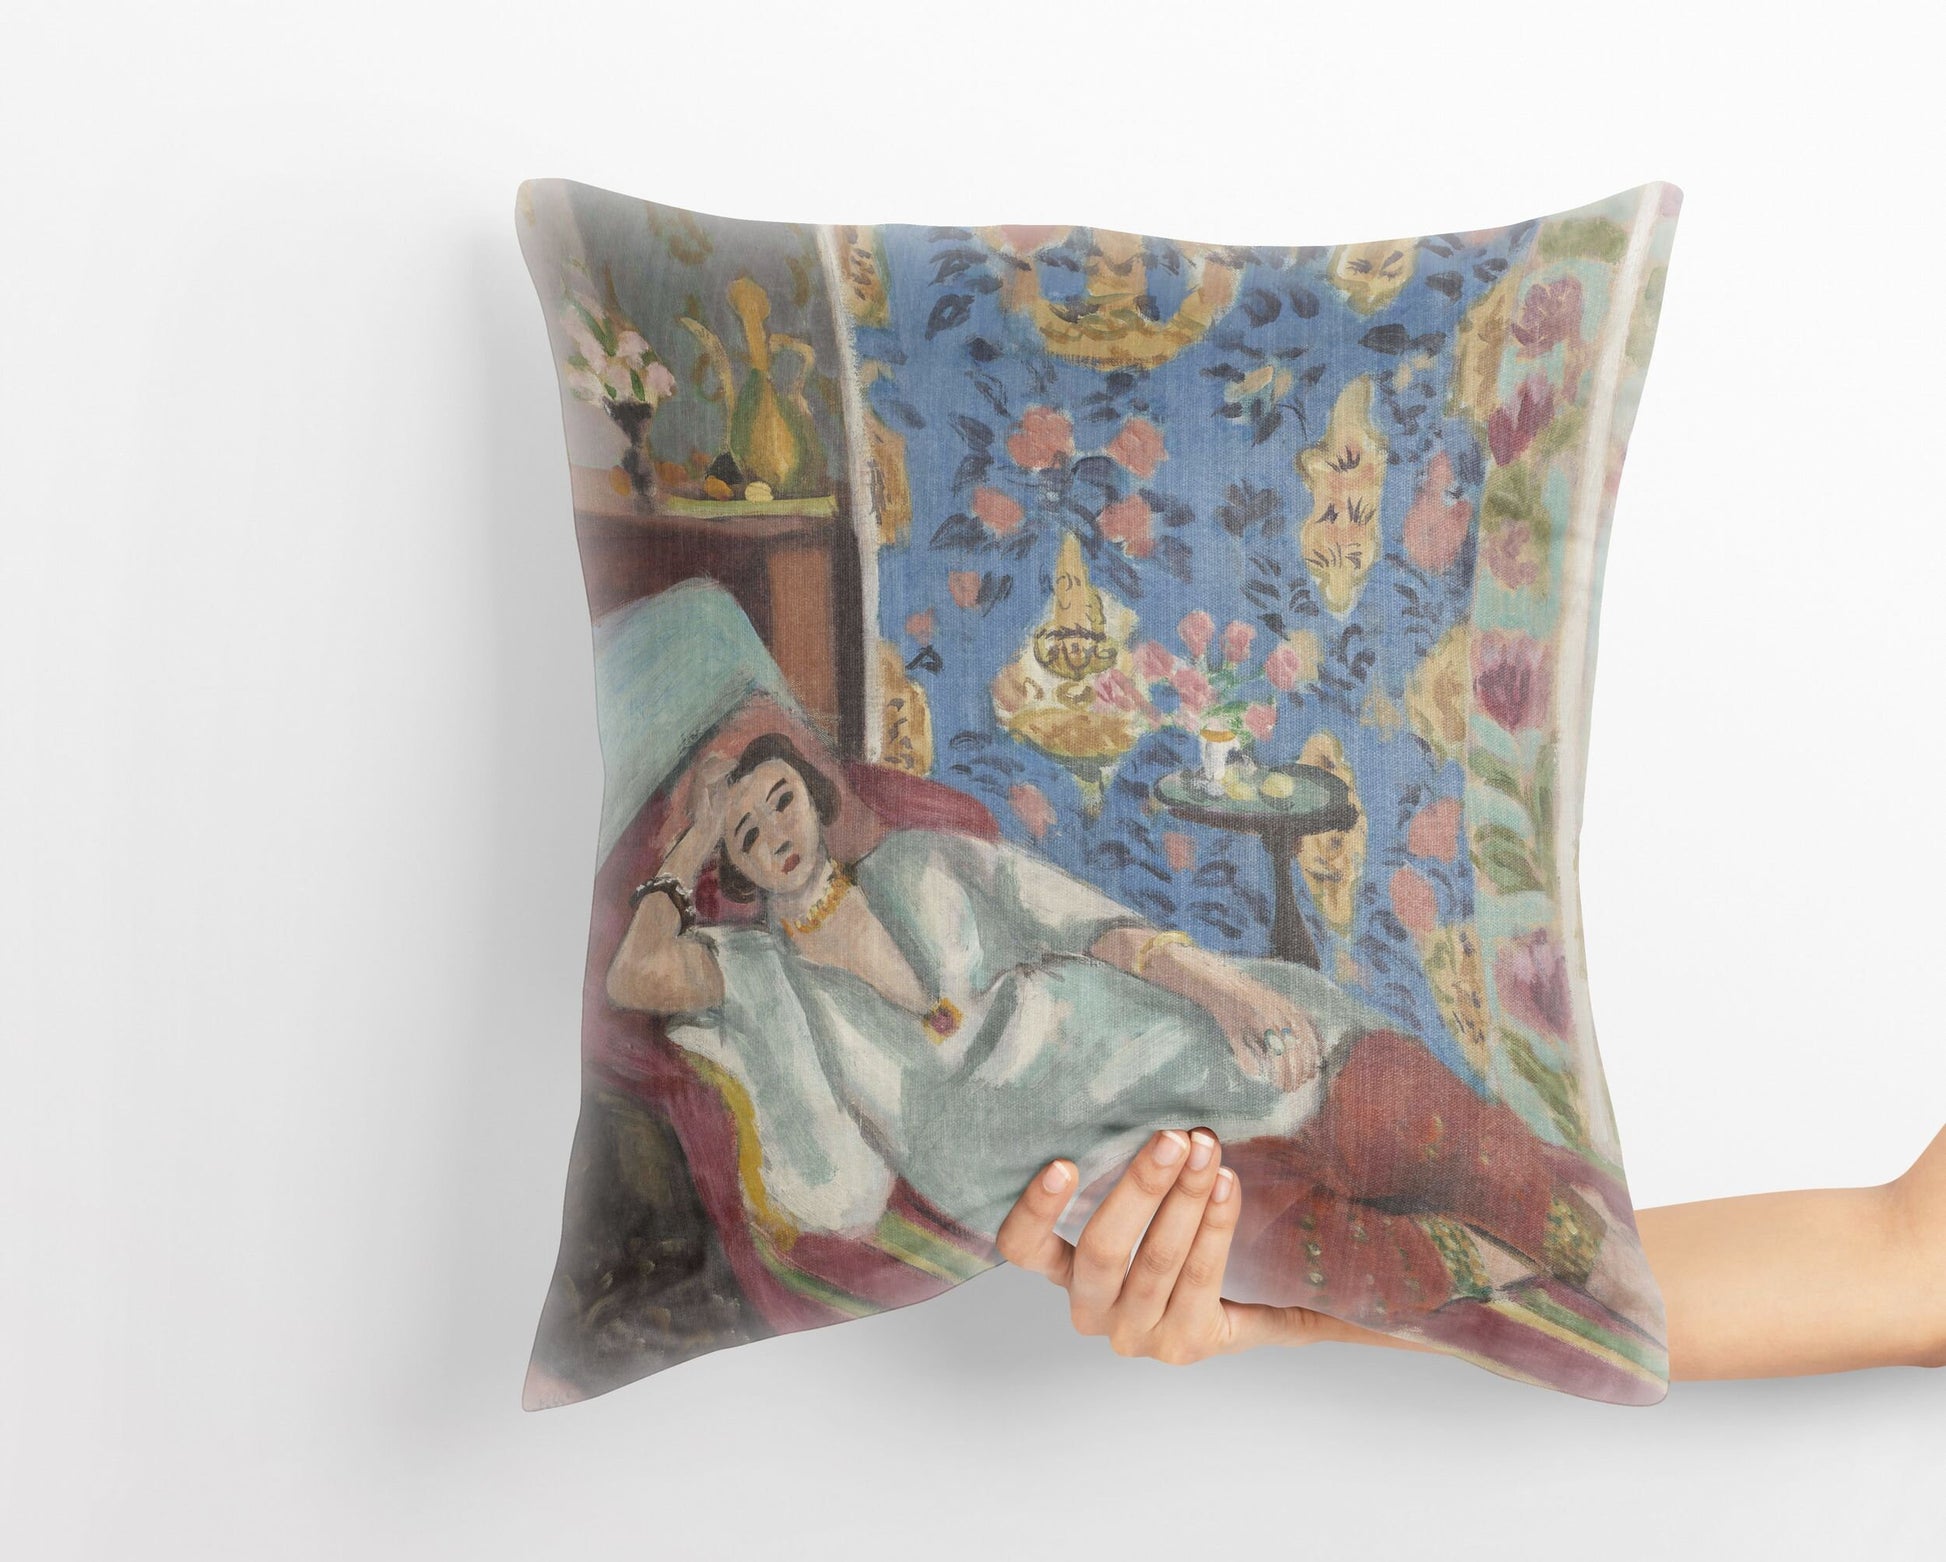 Henri Matisse Famous Art, Toss Pillow, Abstract Throw Pillow, Designer Pillow, Colorful Pillow Case, Contemporary Pillow, 22X22 Pillow Cover